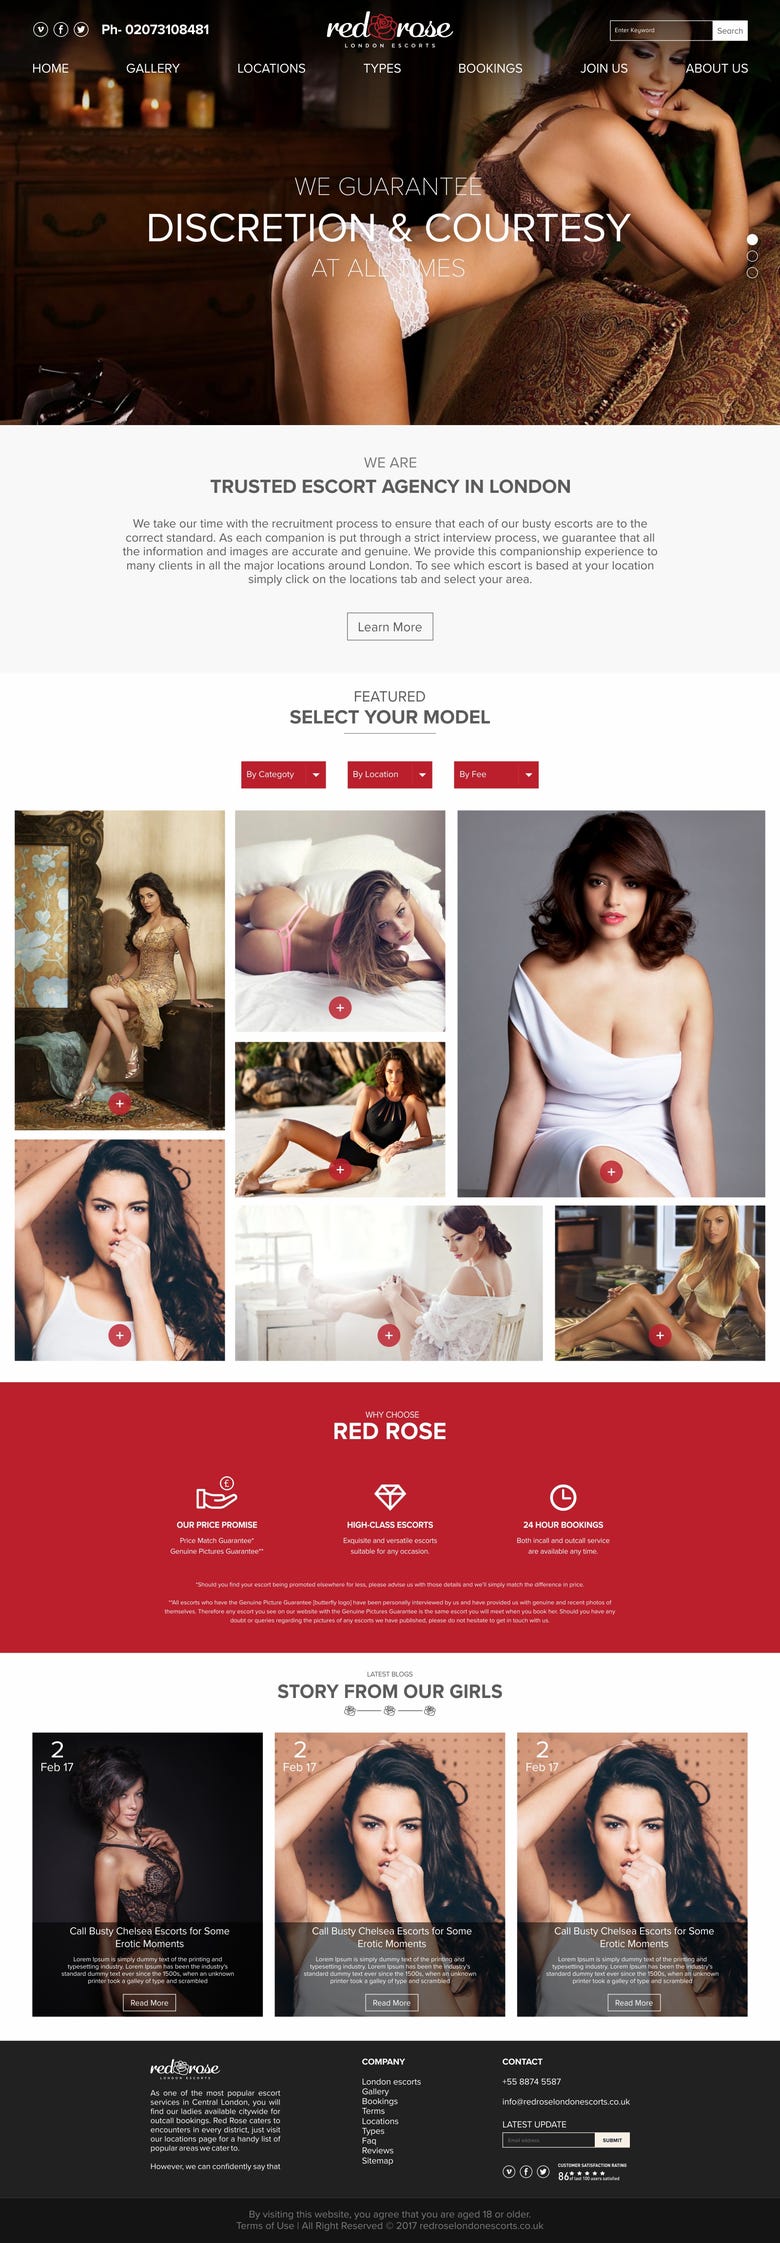 Red Rose Website Design